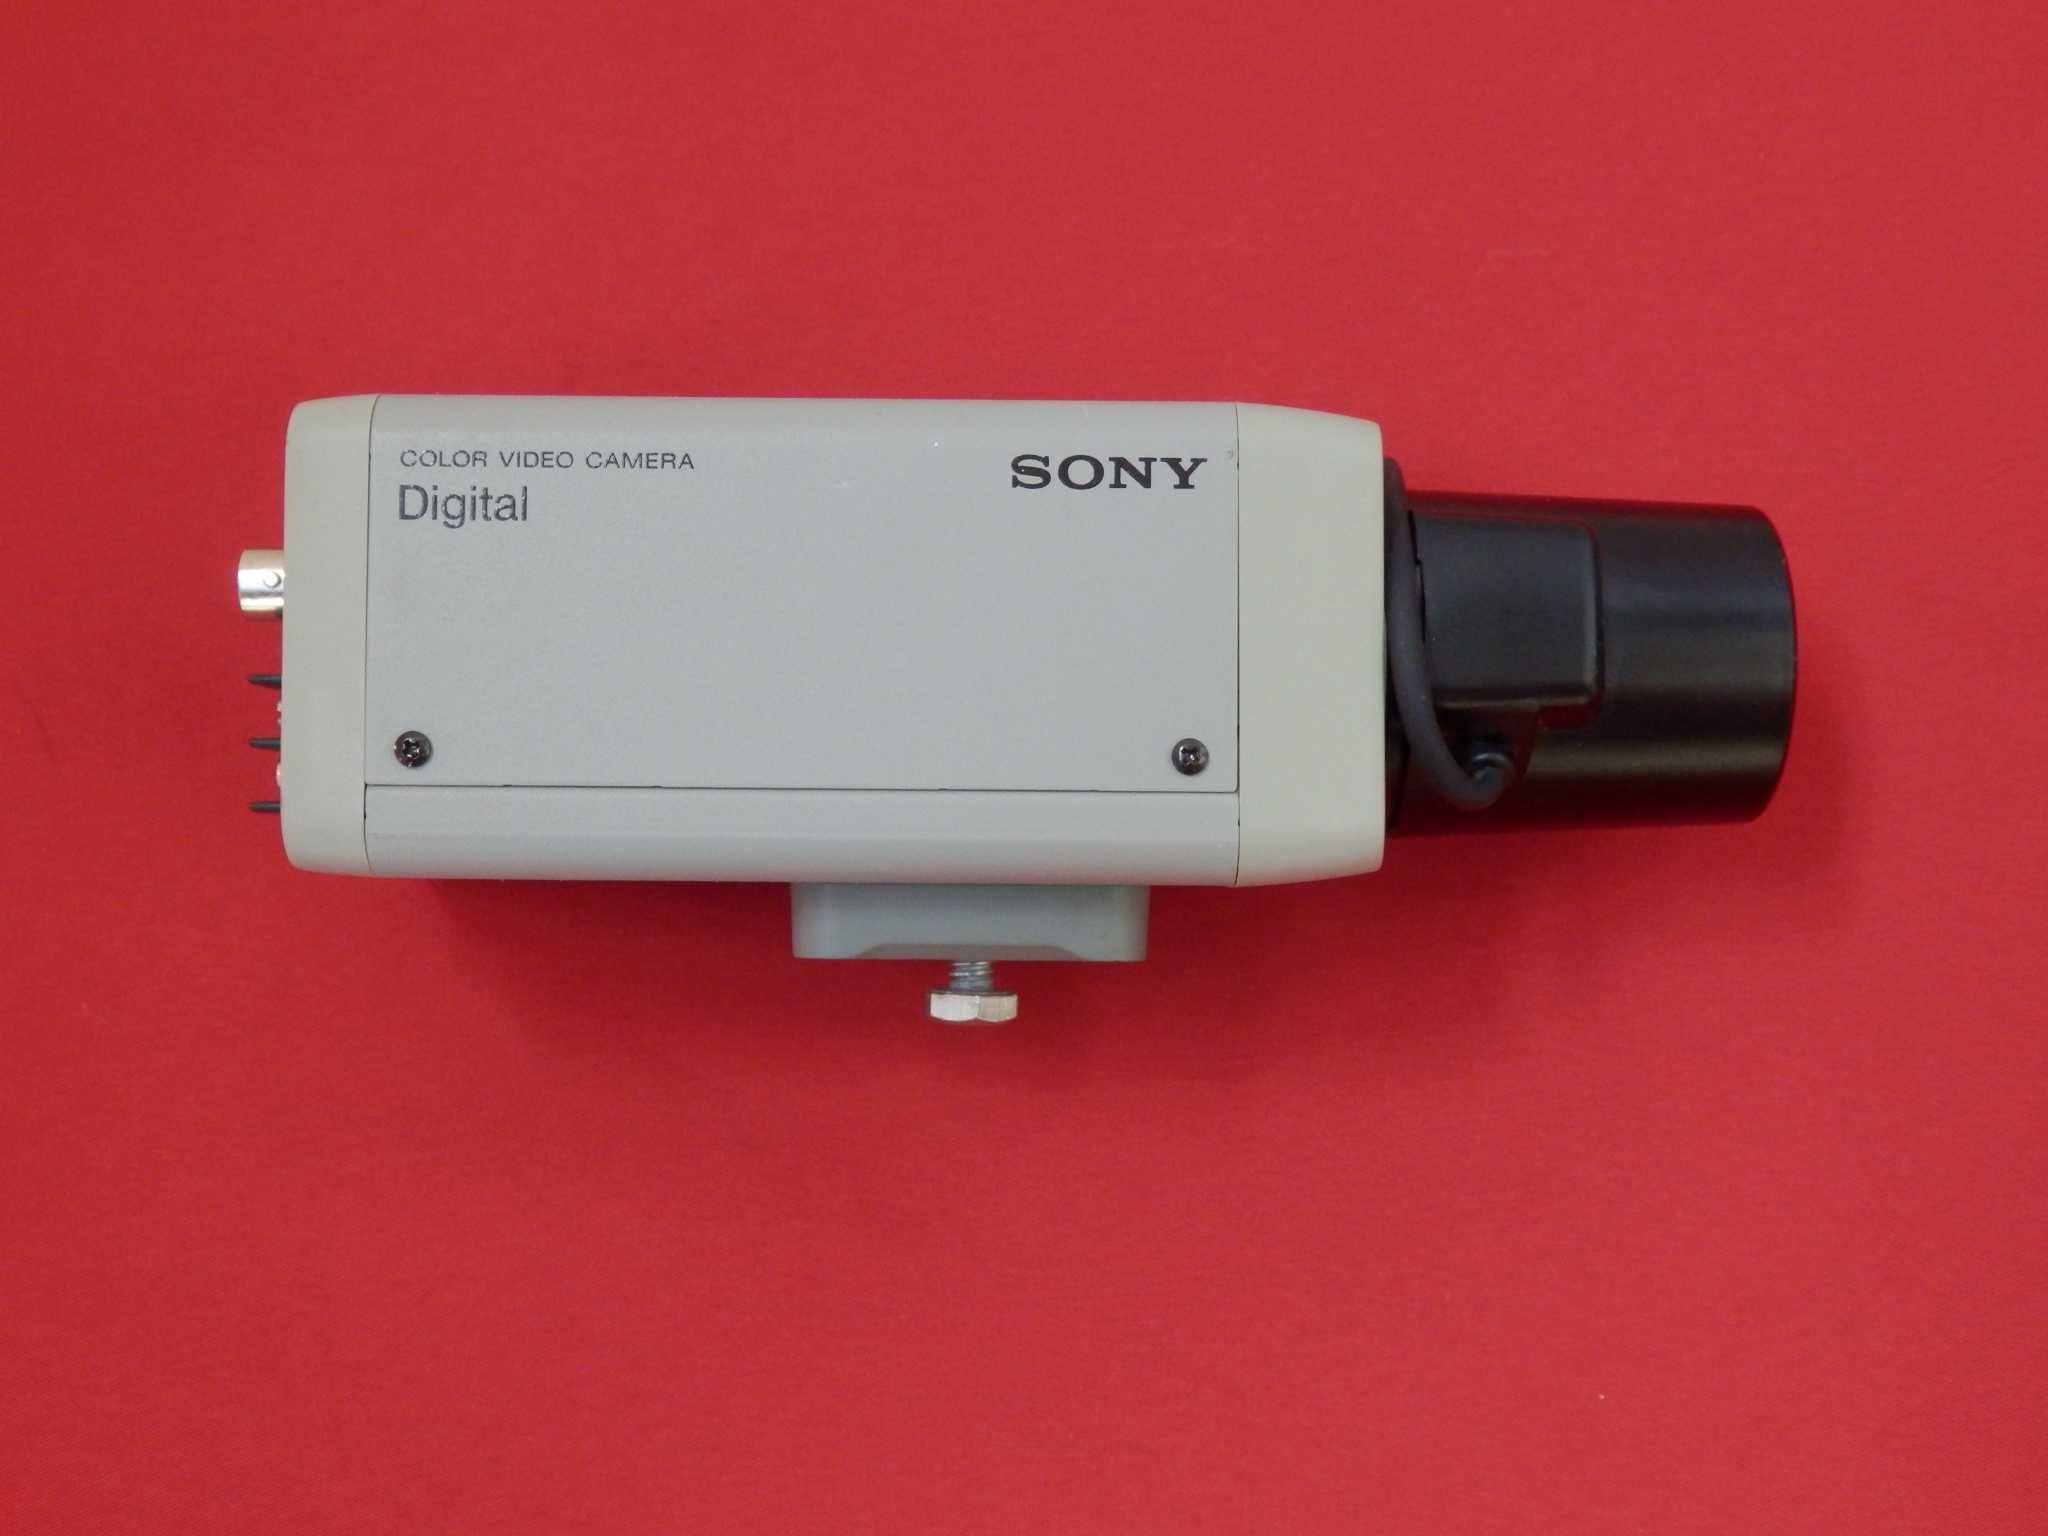 Sony Digital color video camera * камера за наблюдение